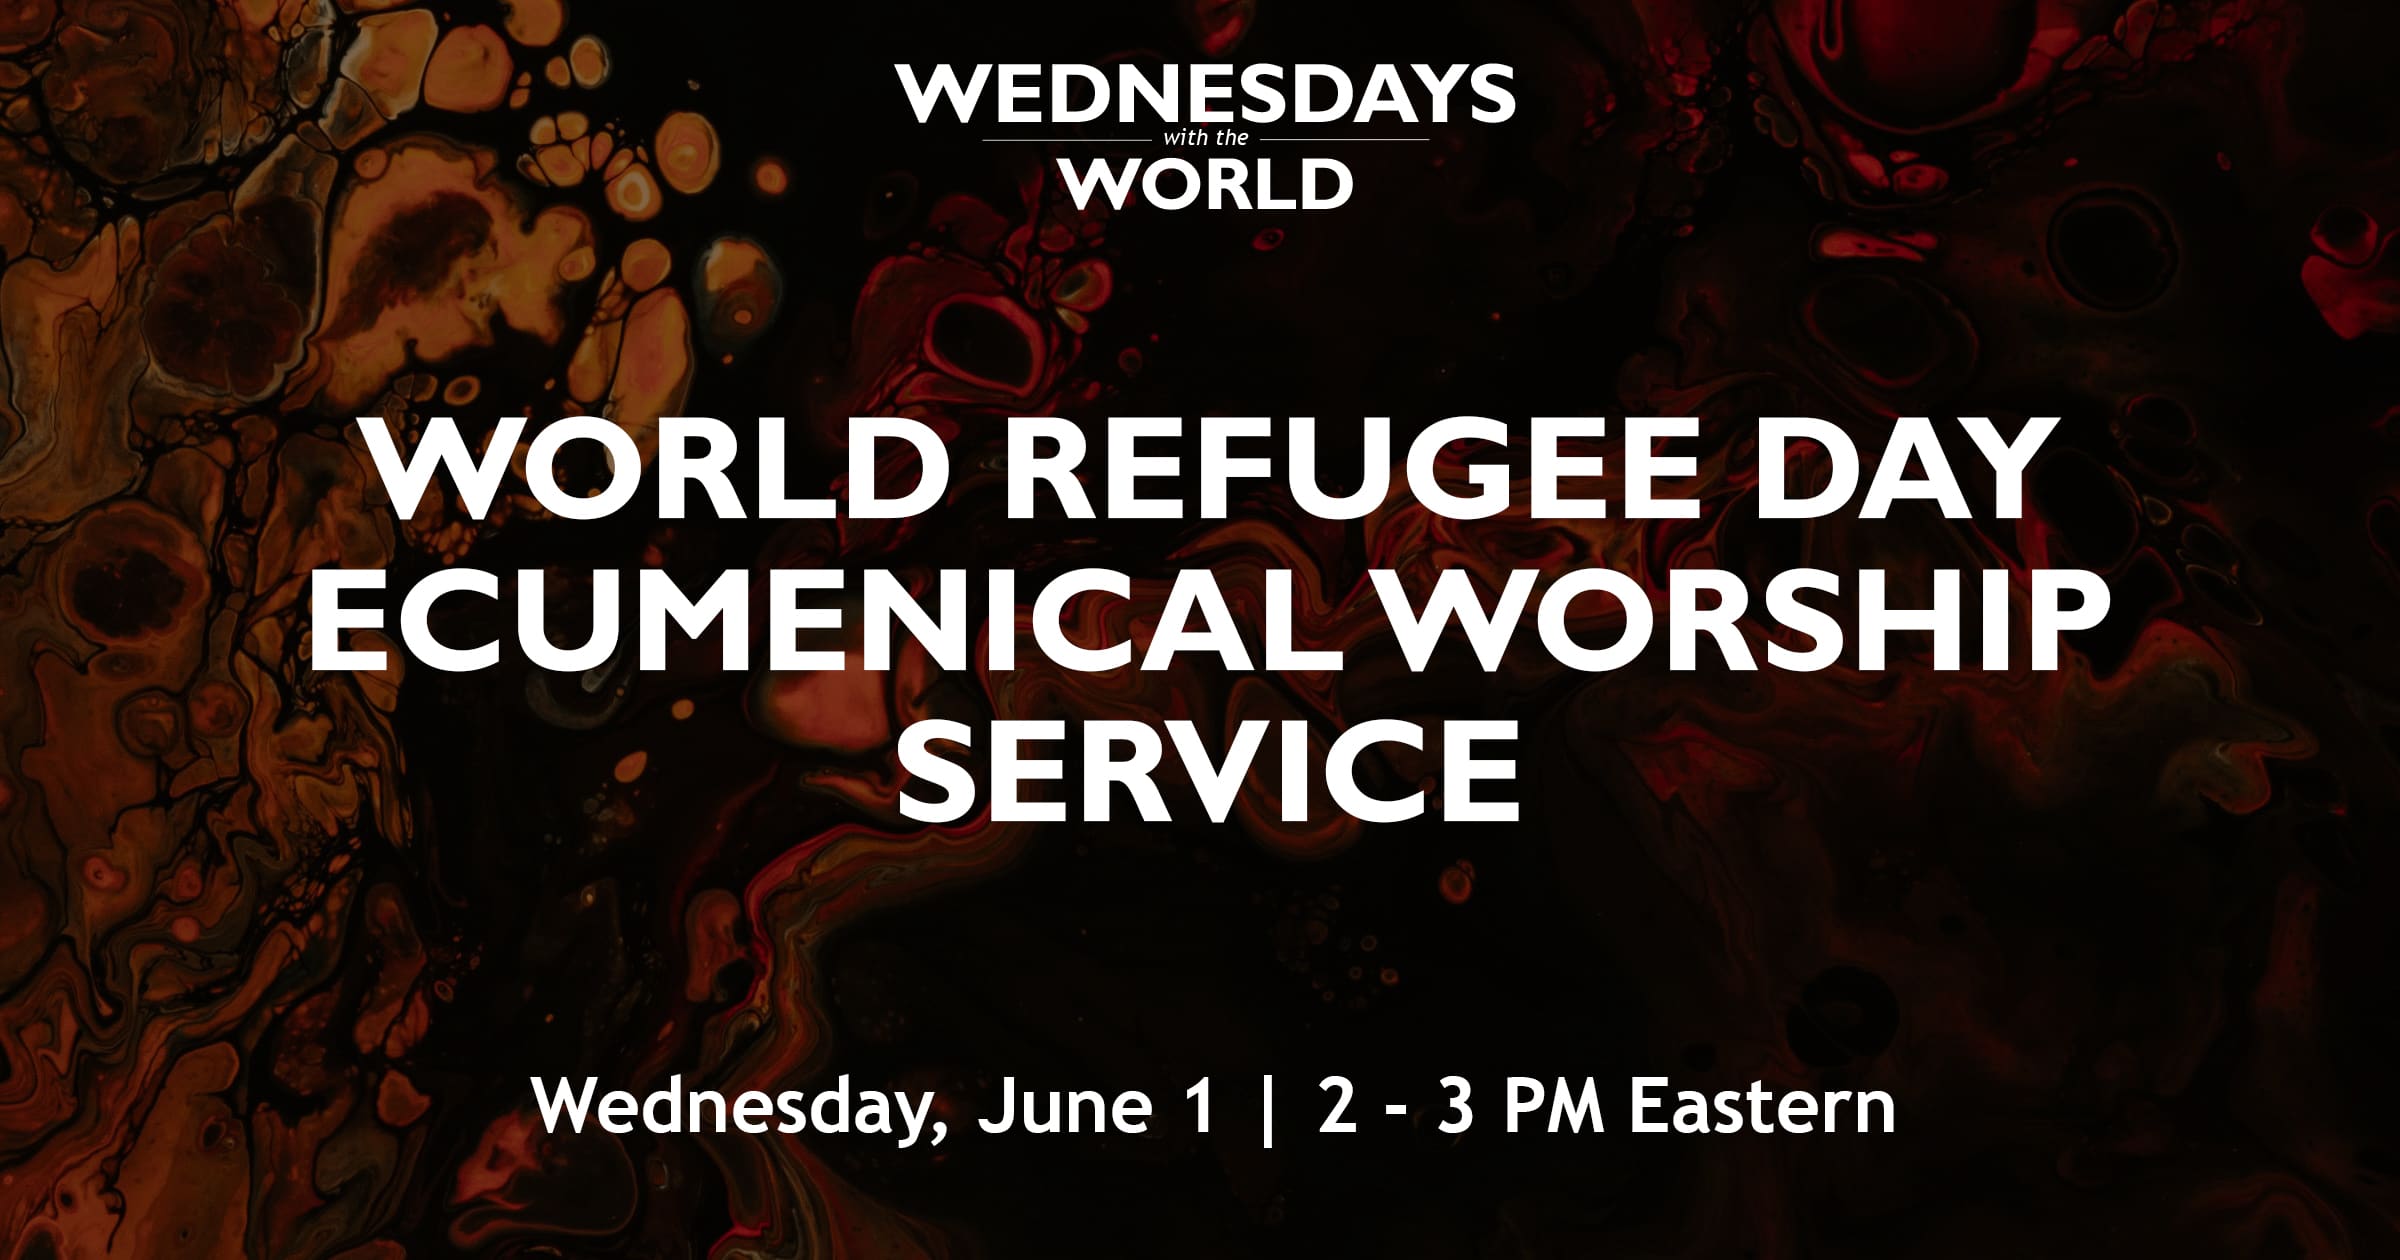 WorldRefugeeDayEcumenicalWorshipService-WednesdayswiththeWorld